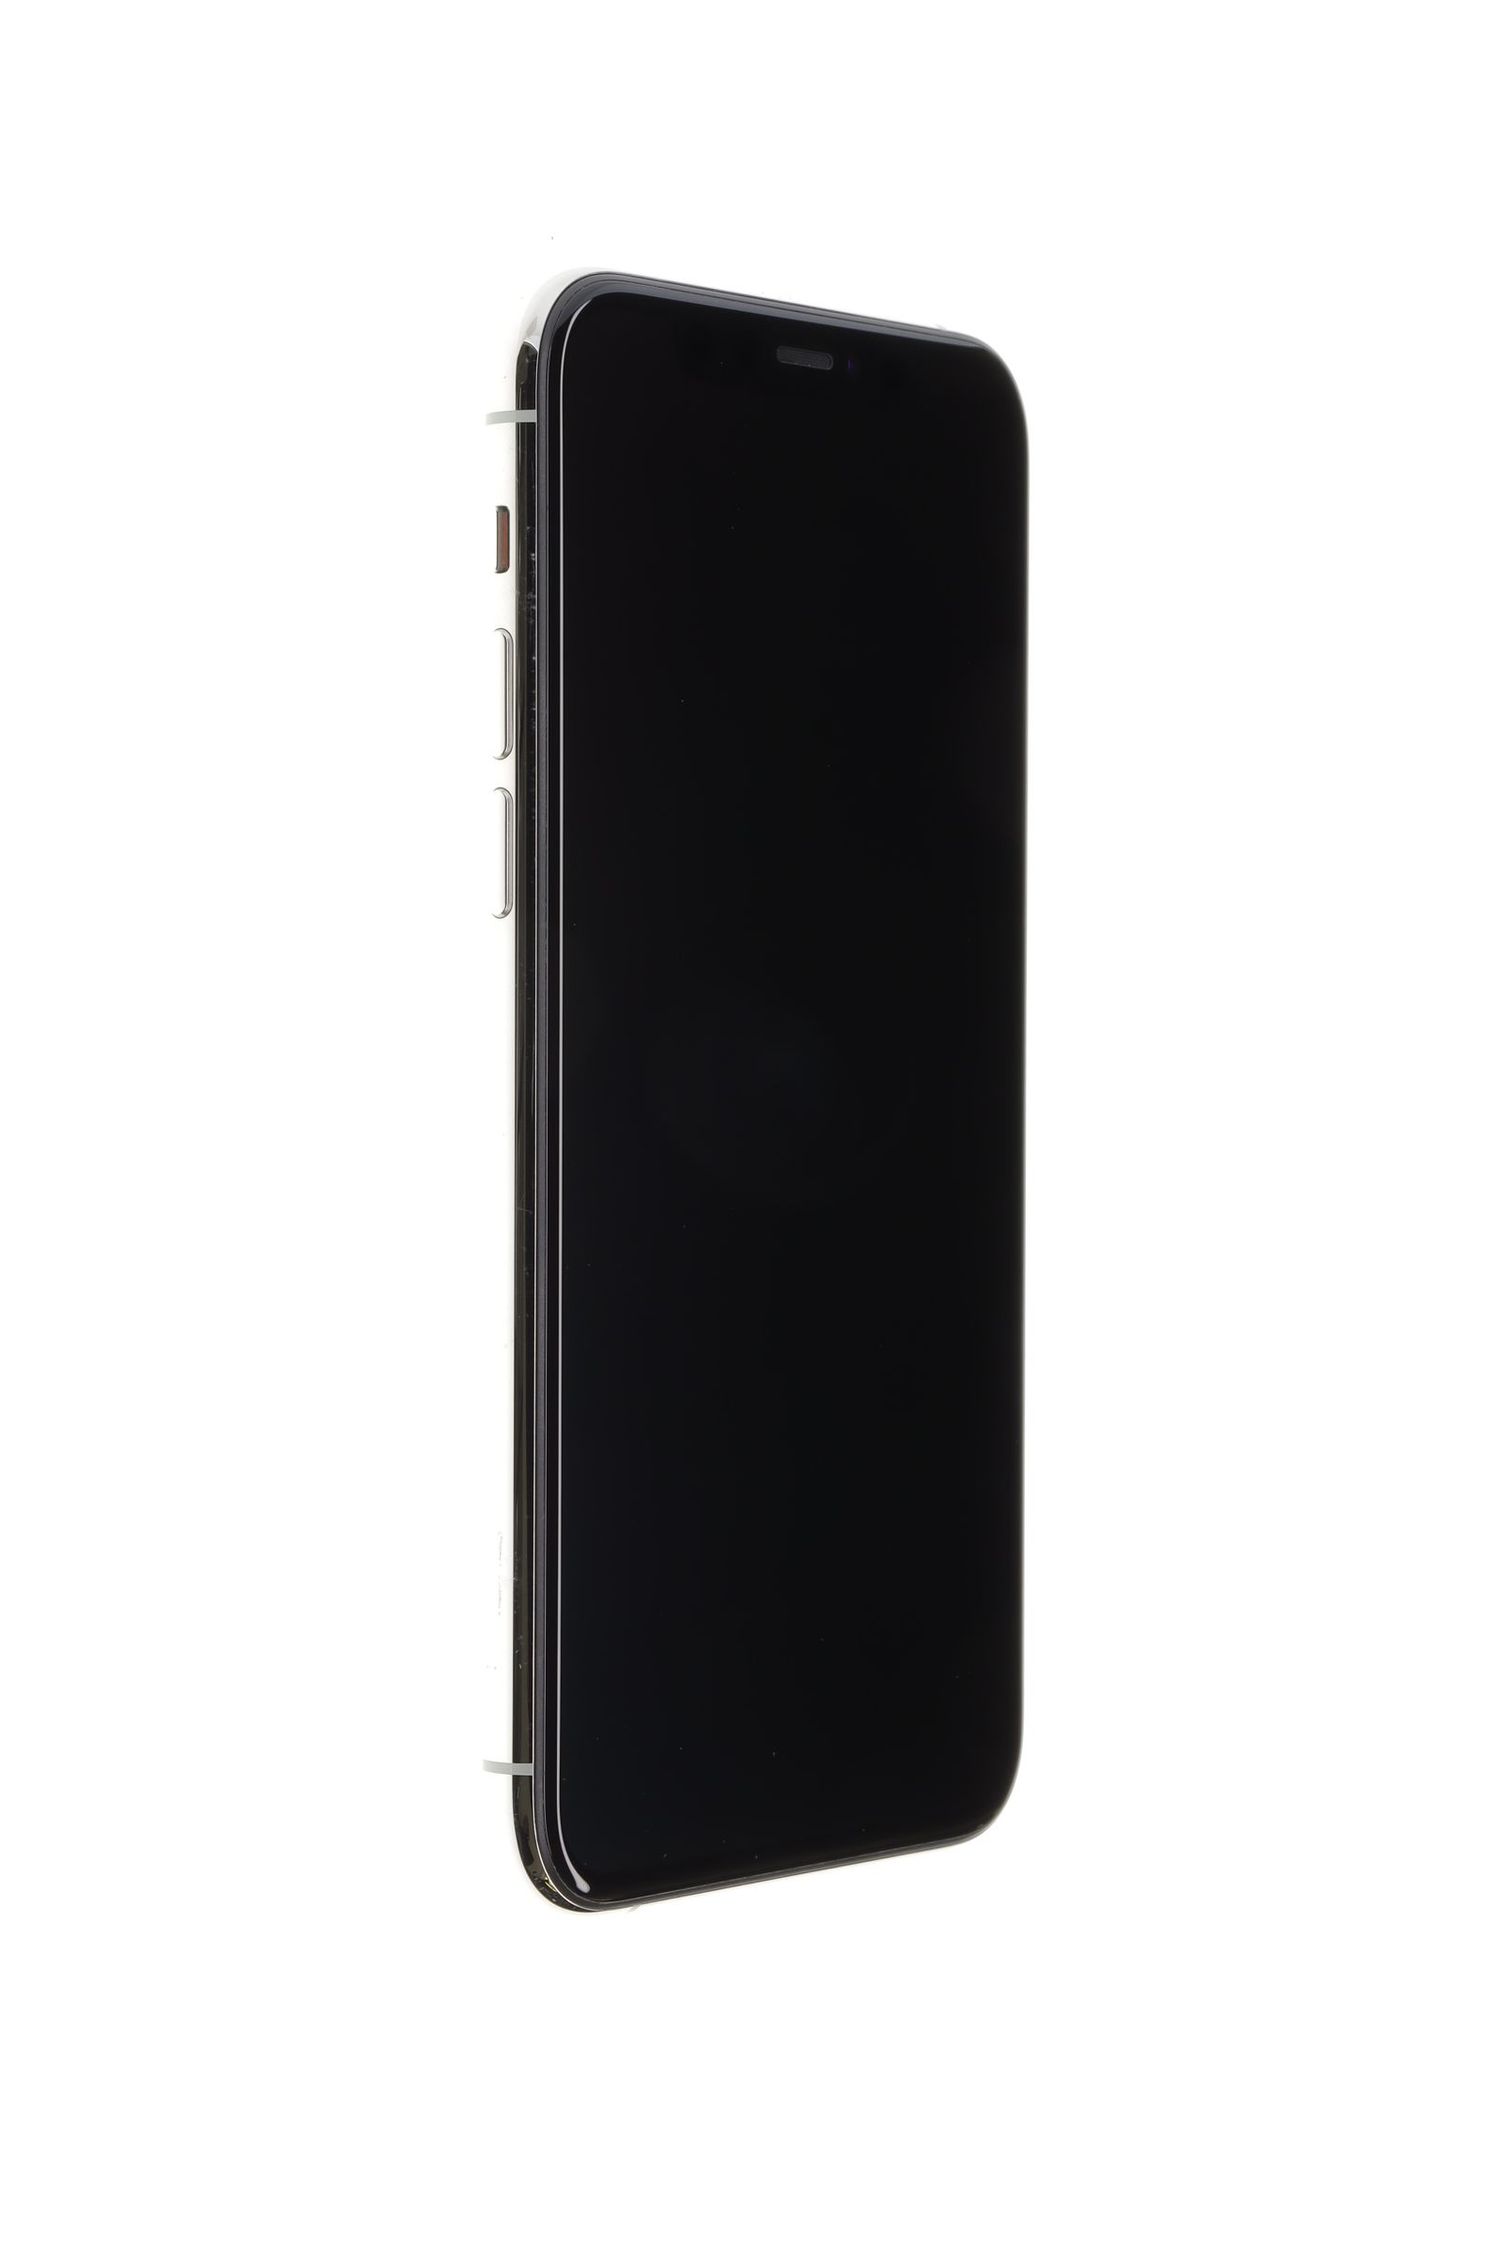 Κινητό τηλέφωνο Apple iPhone 11 Pro, Silver, 64 GB, Ca Nou